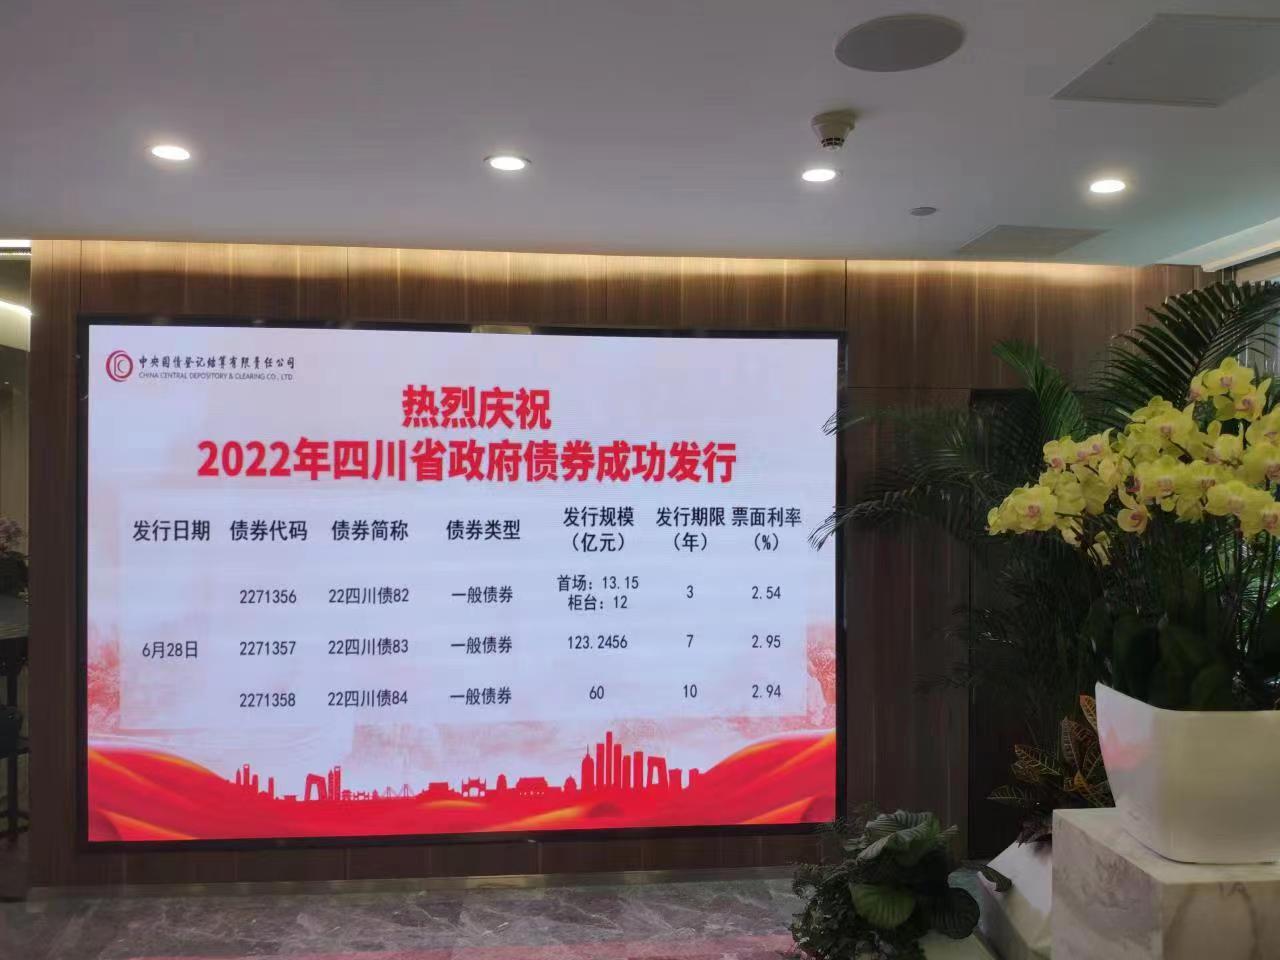  四川省2022年地方政府债券柜台发行正式启动